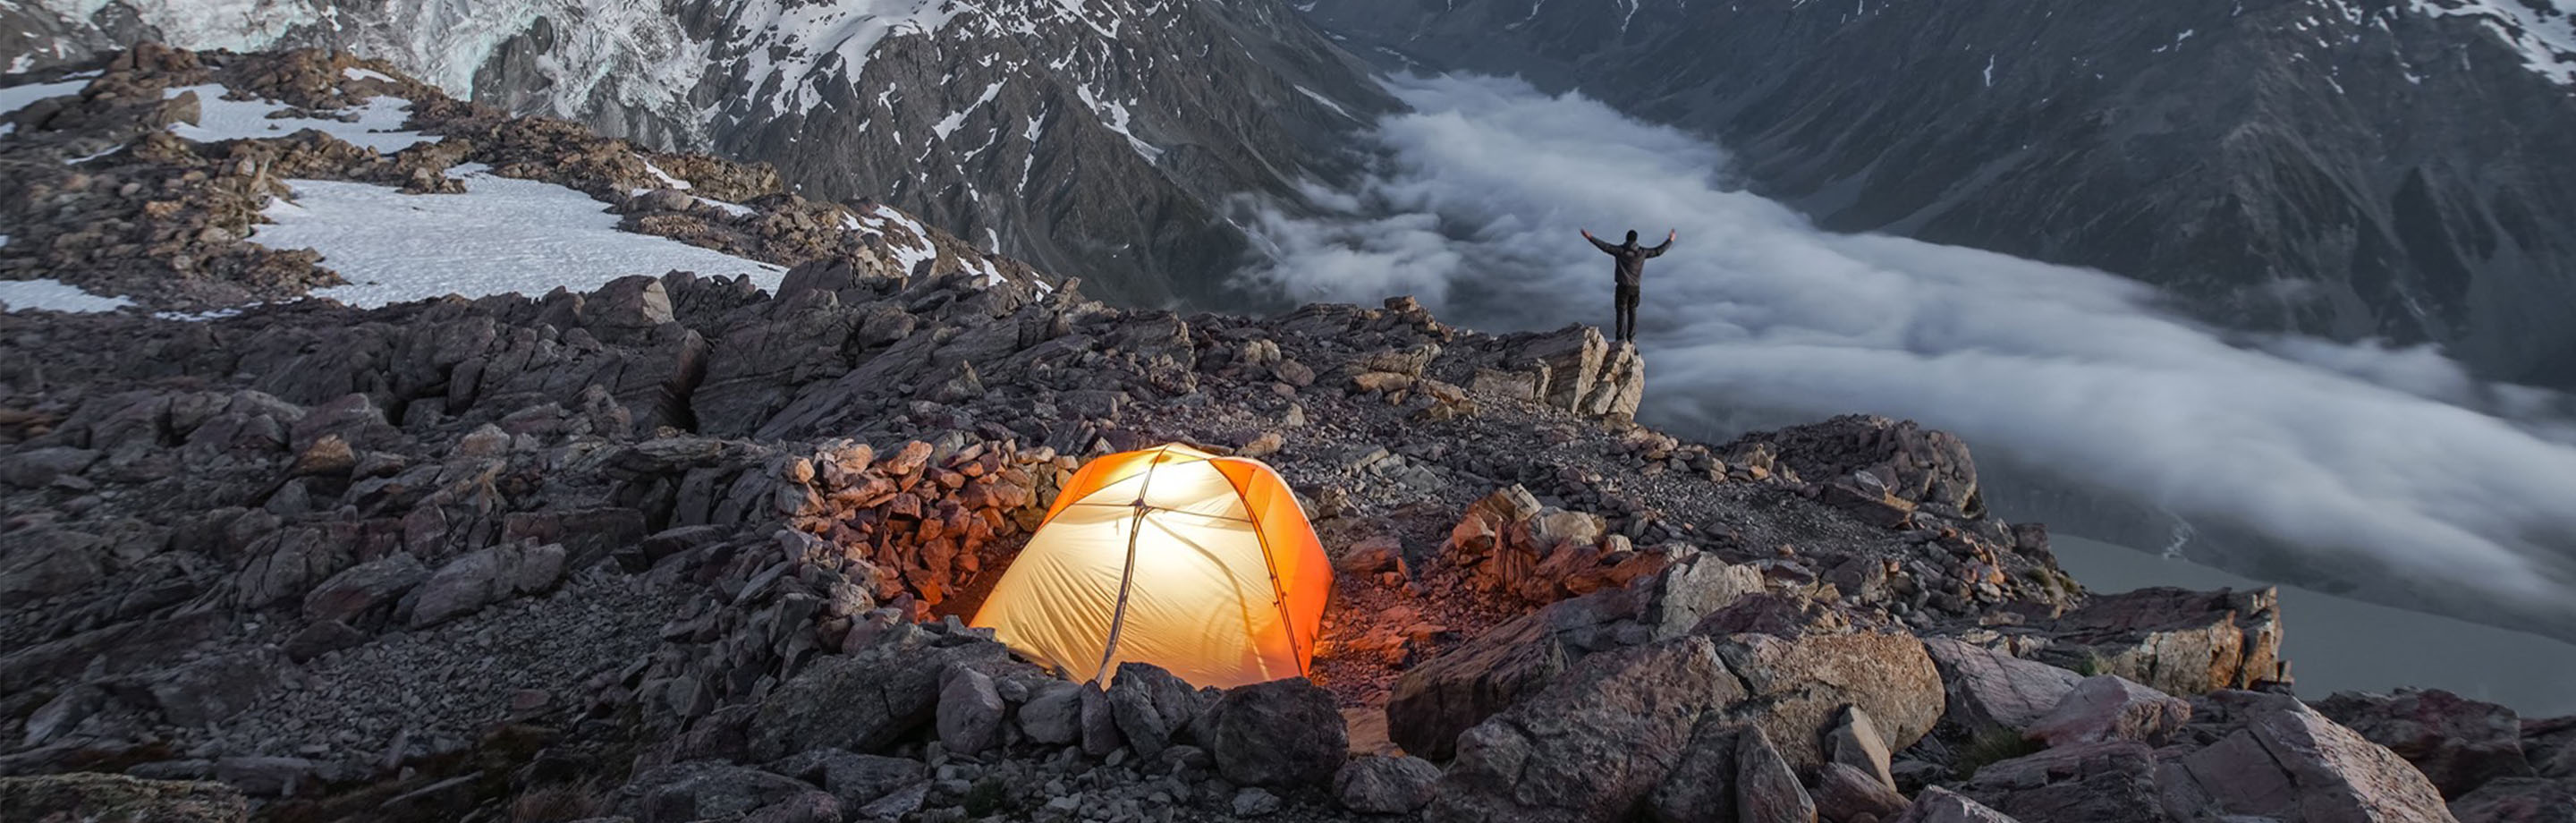 Big Agnes - ultralichte tenten, tarps & Co. Voor jouw outdoor-ervaring